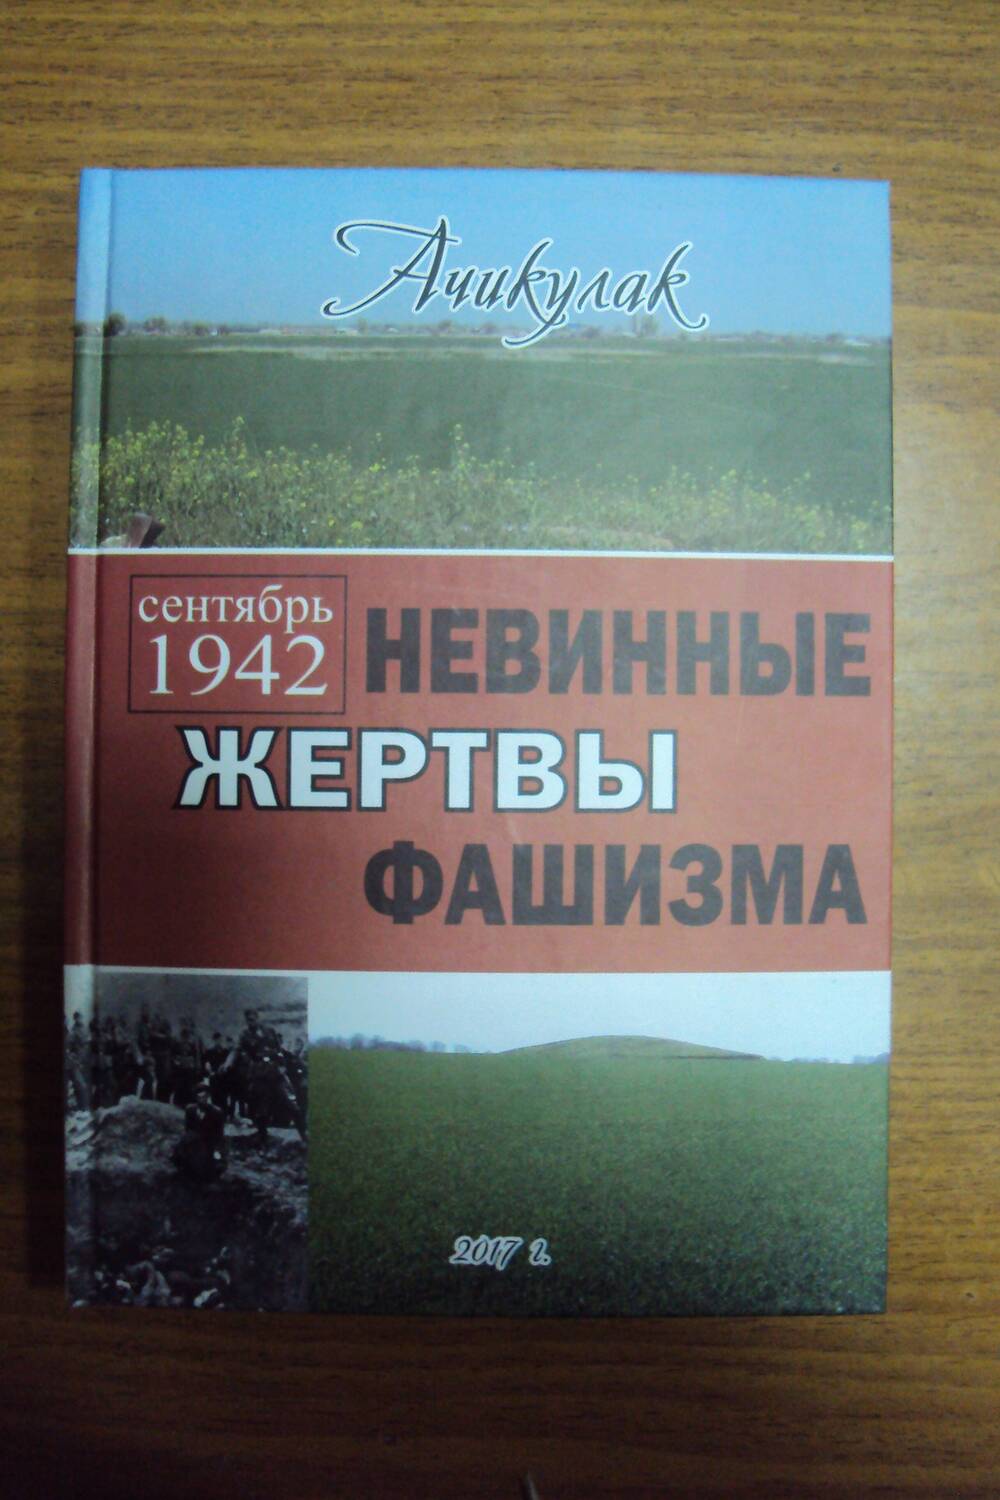 Книга «Сентябрь 1942 г  Невинные жертвы фашизма».